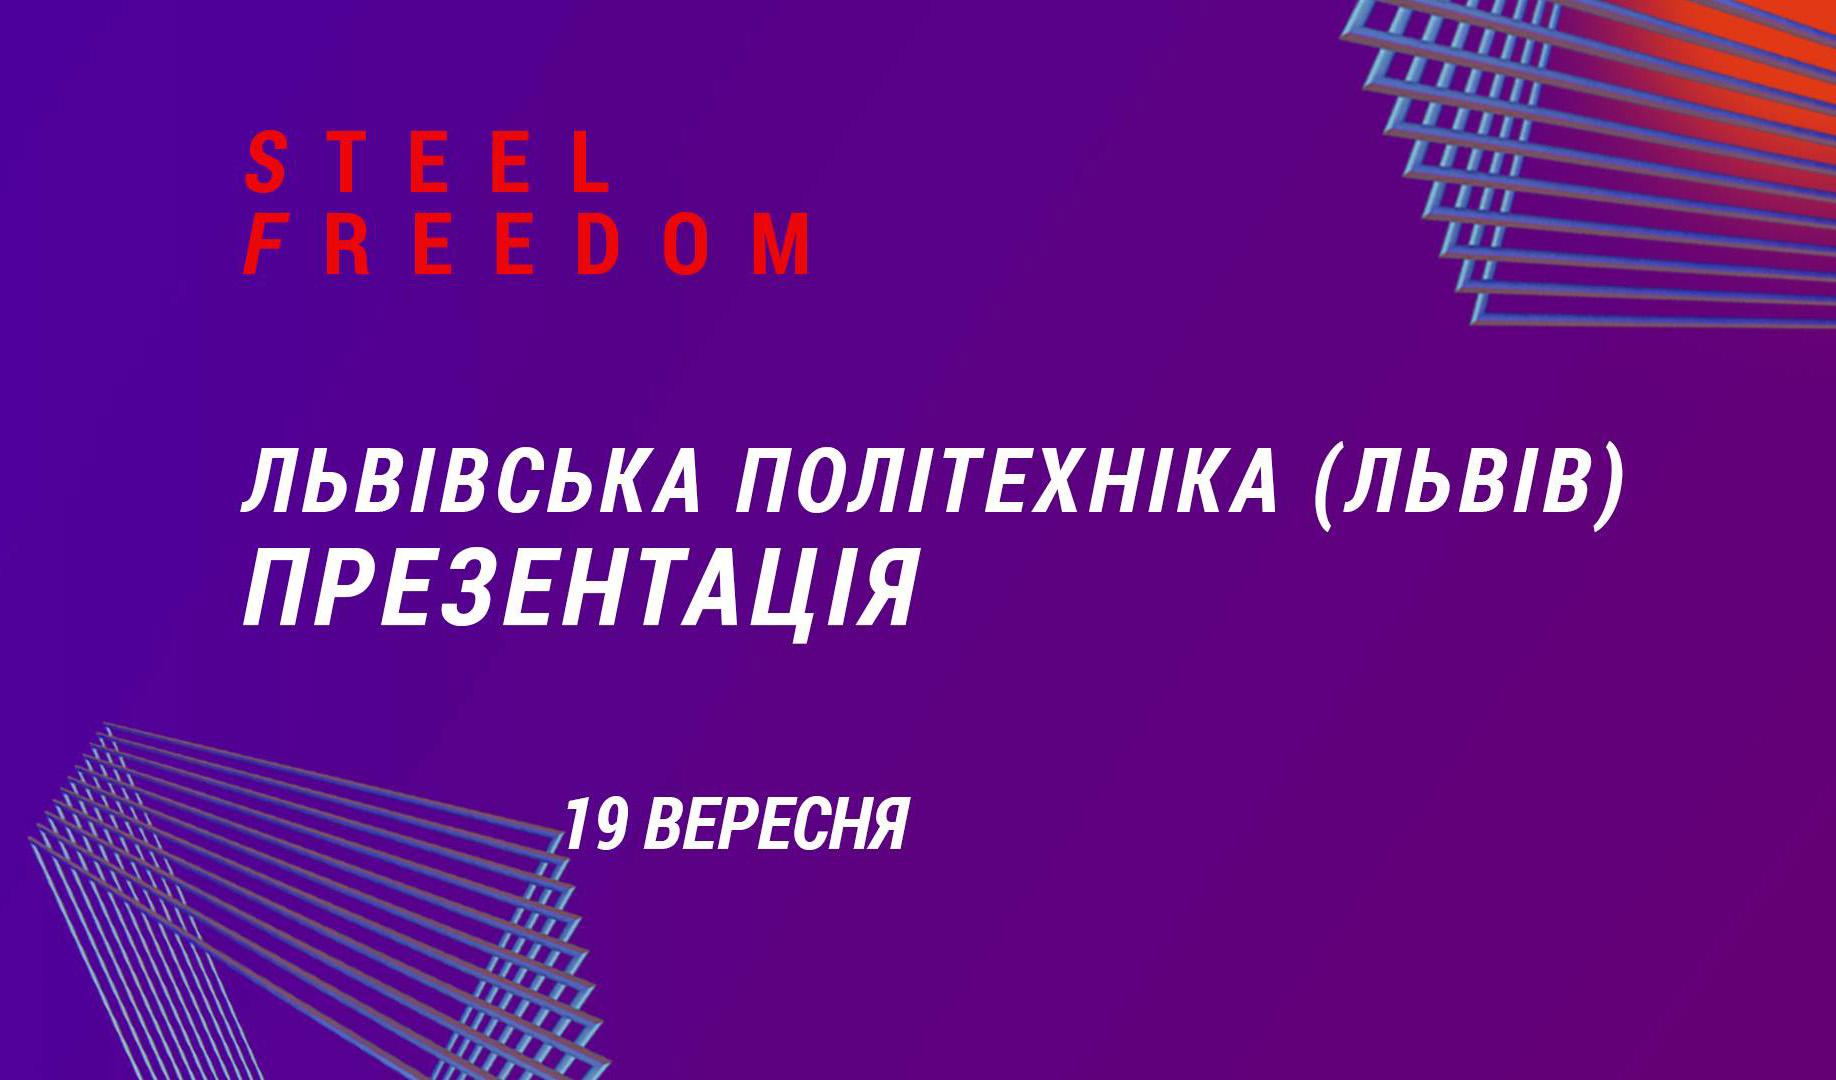 презентація конкурсу Steel Freedom